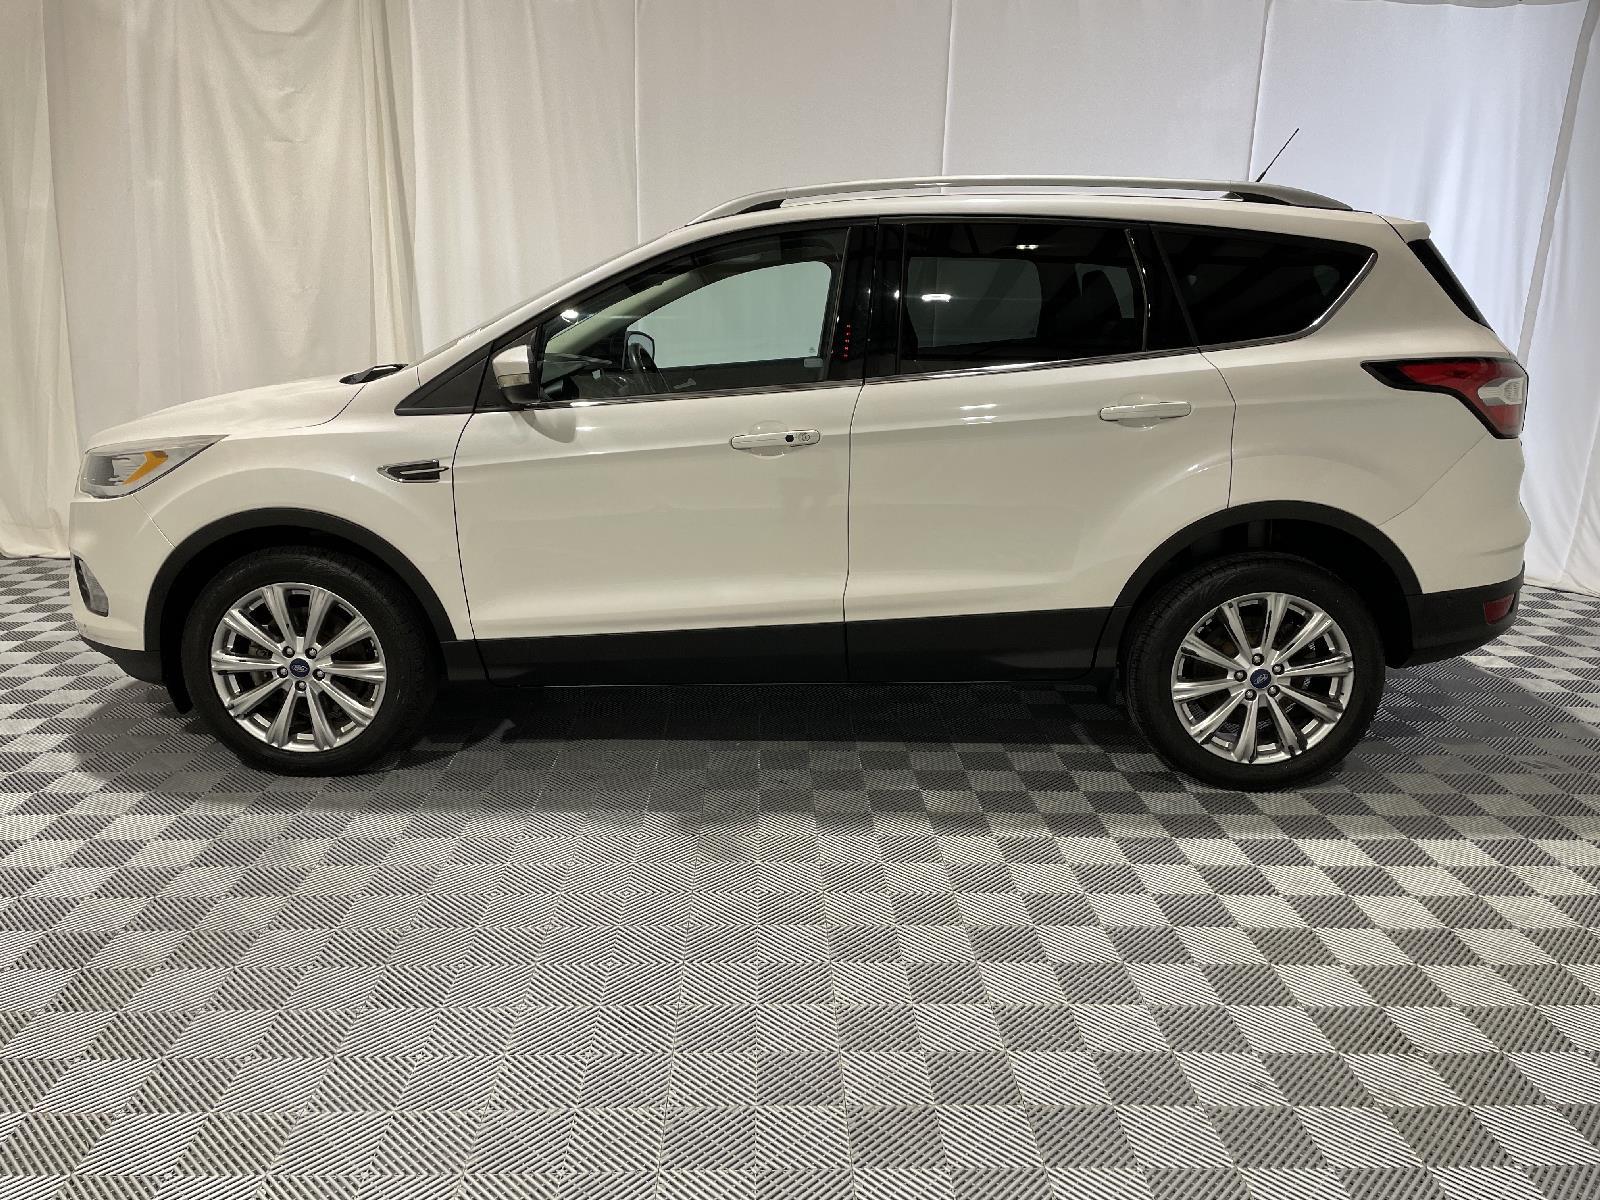 Used 2018 Ford Escape Titanium SUV for sale in St Joseph MO